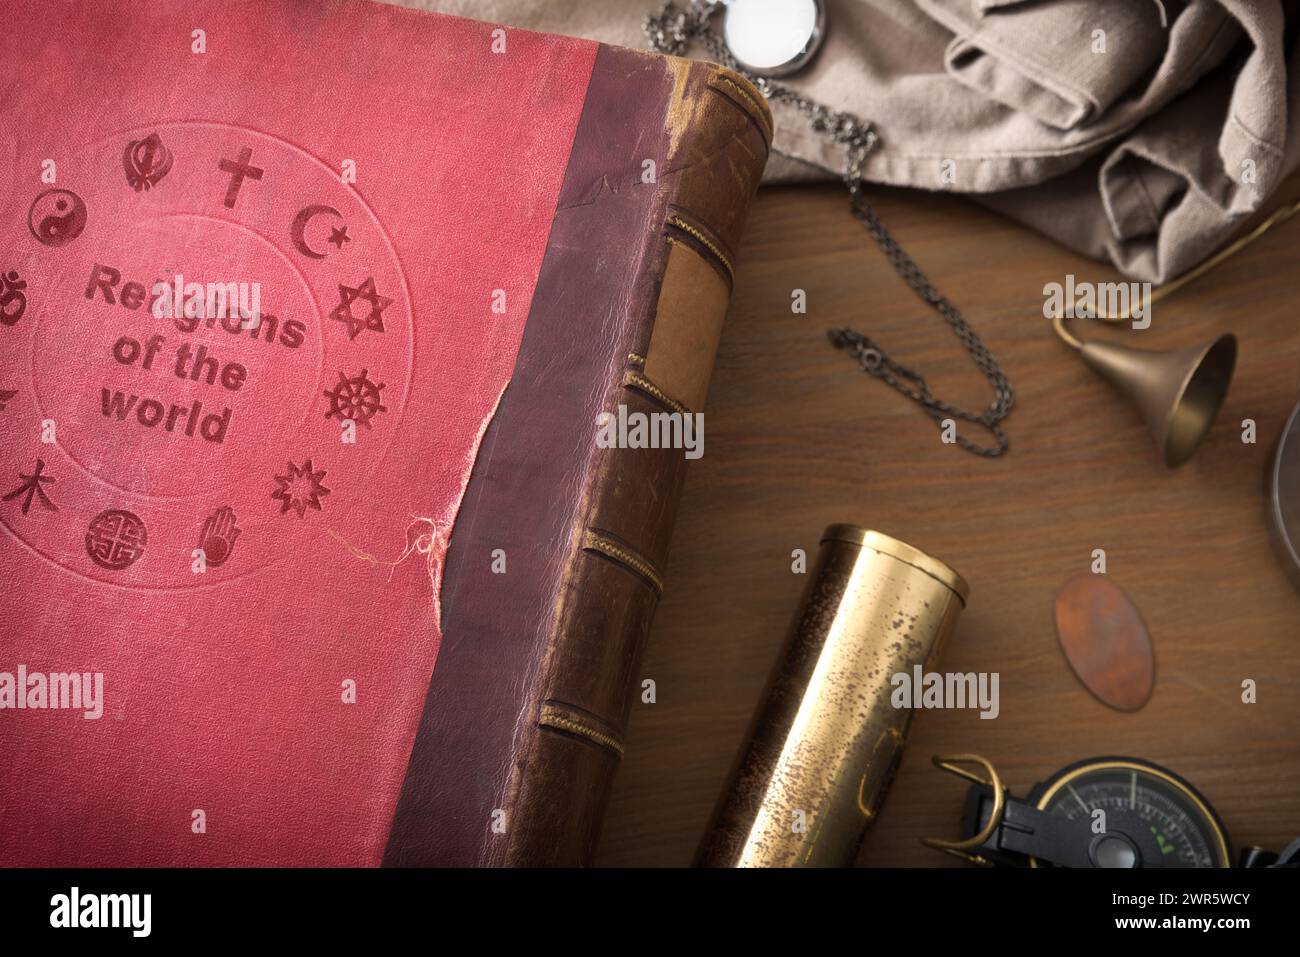 Detail des alten Buches über das Studium der Religionen in der Welt Holztisch mit dekorativen Gegenständen. Draufsicht. Stockfoto